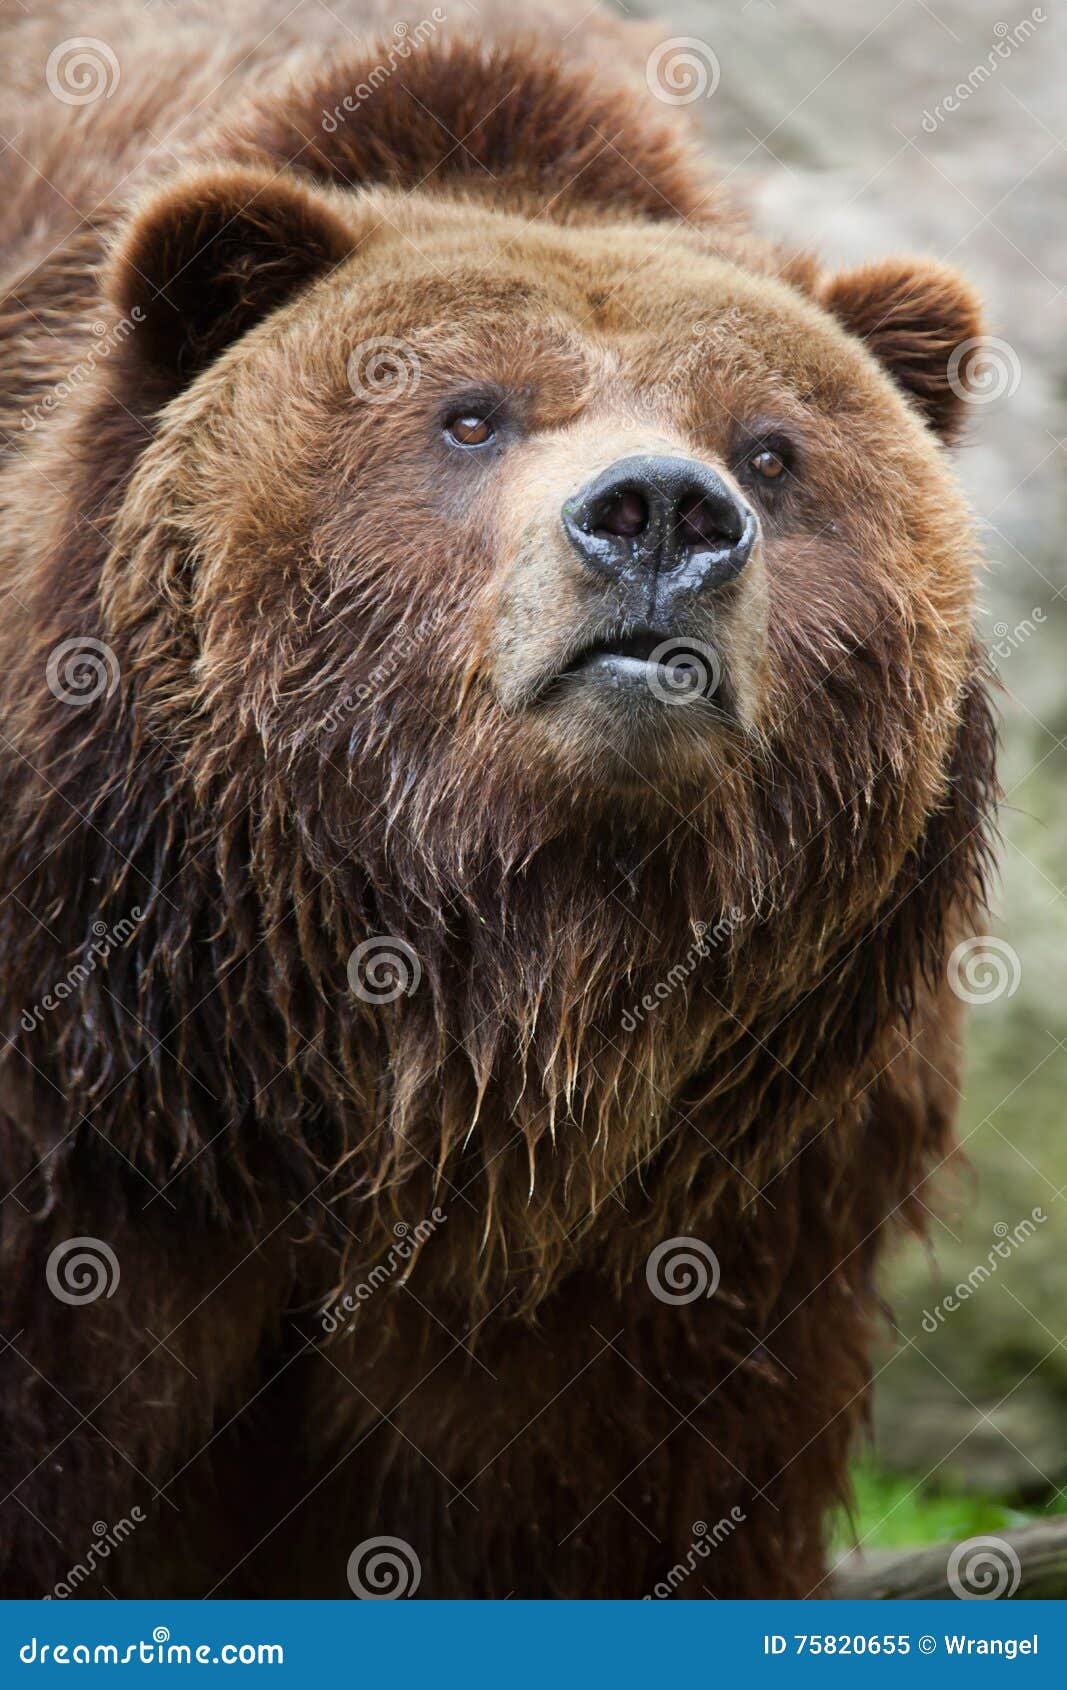 mainland grizzly (ursus arctos horribilis).